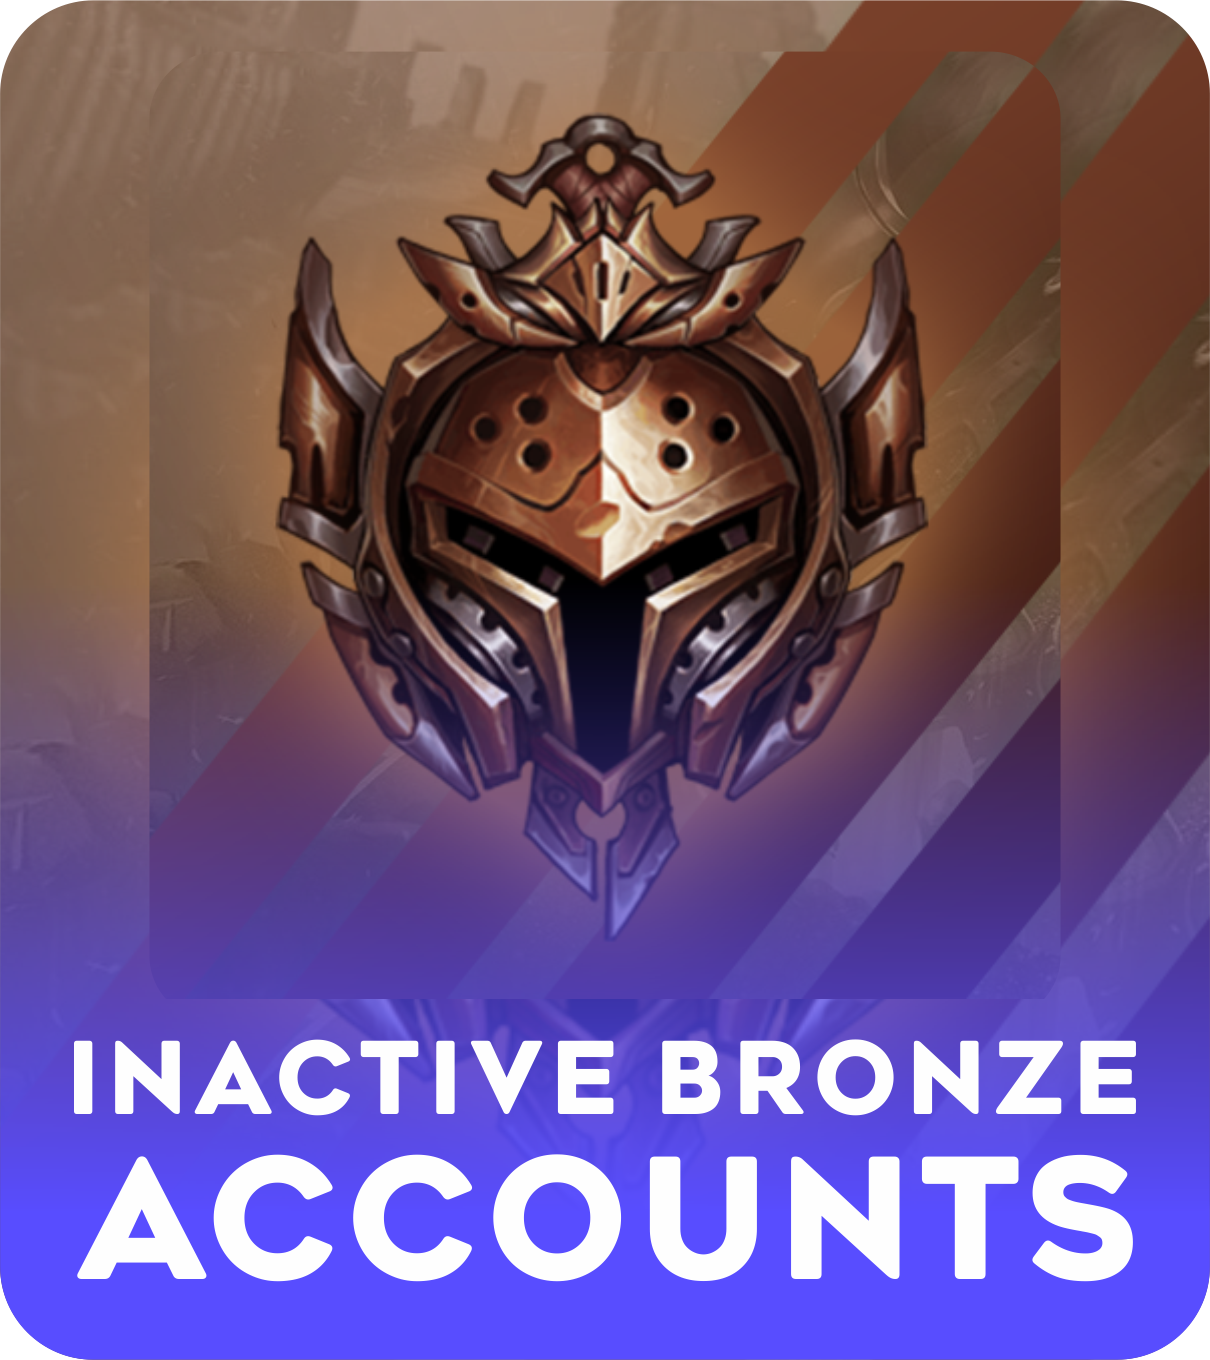 Inactive bronze account